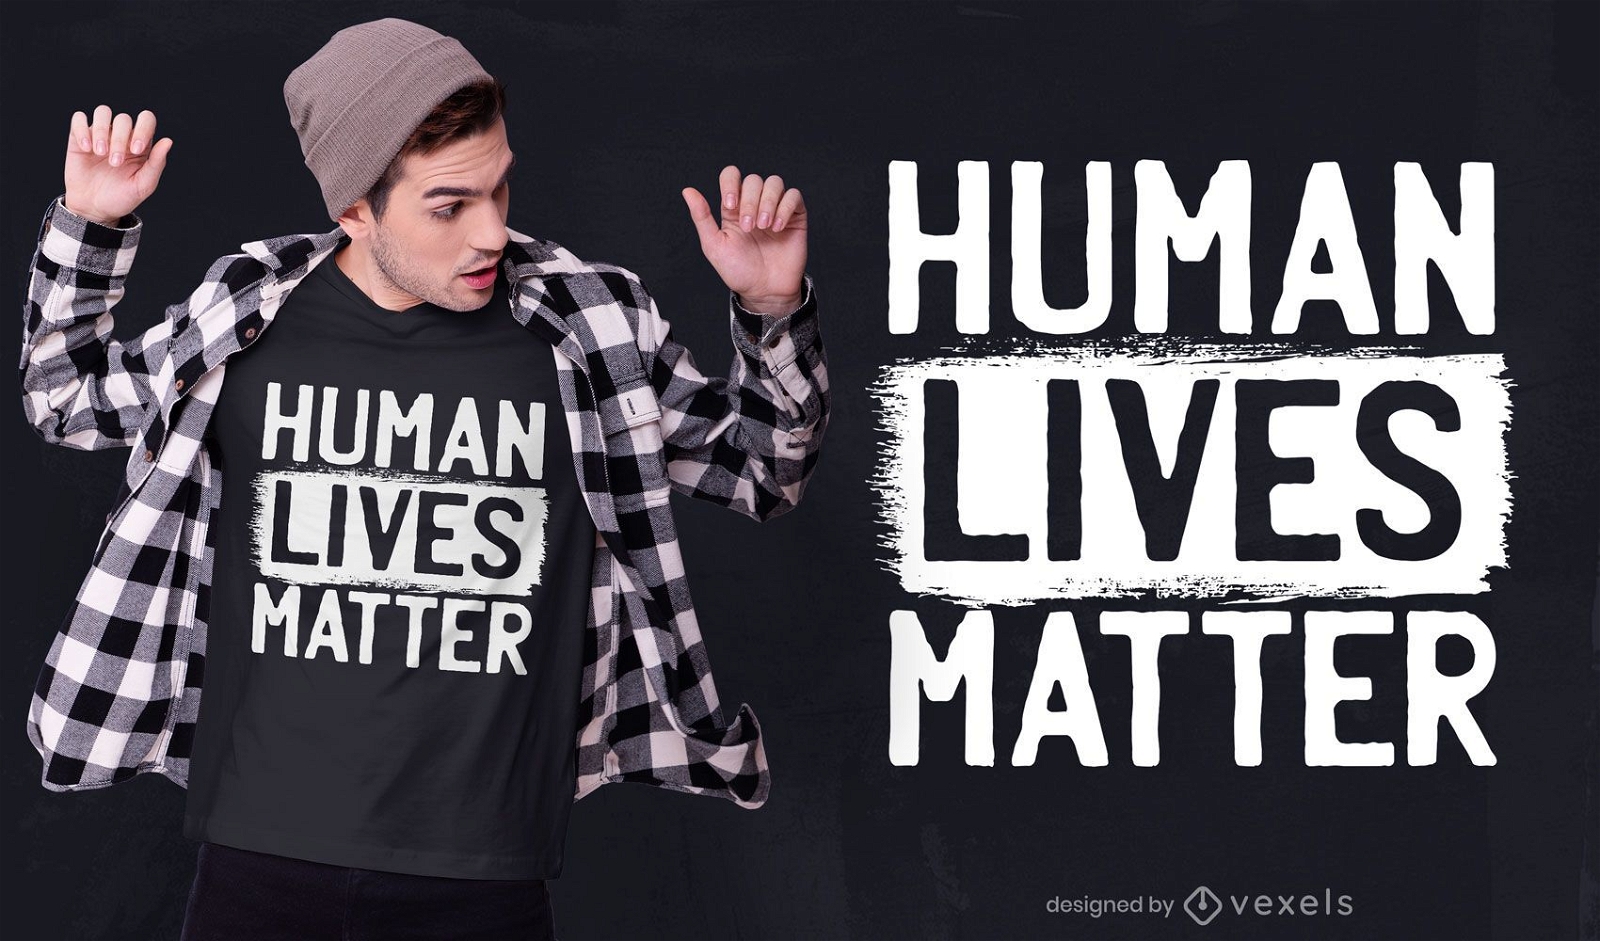 Las vidas humanas importan el dise?o de la camiseta.